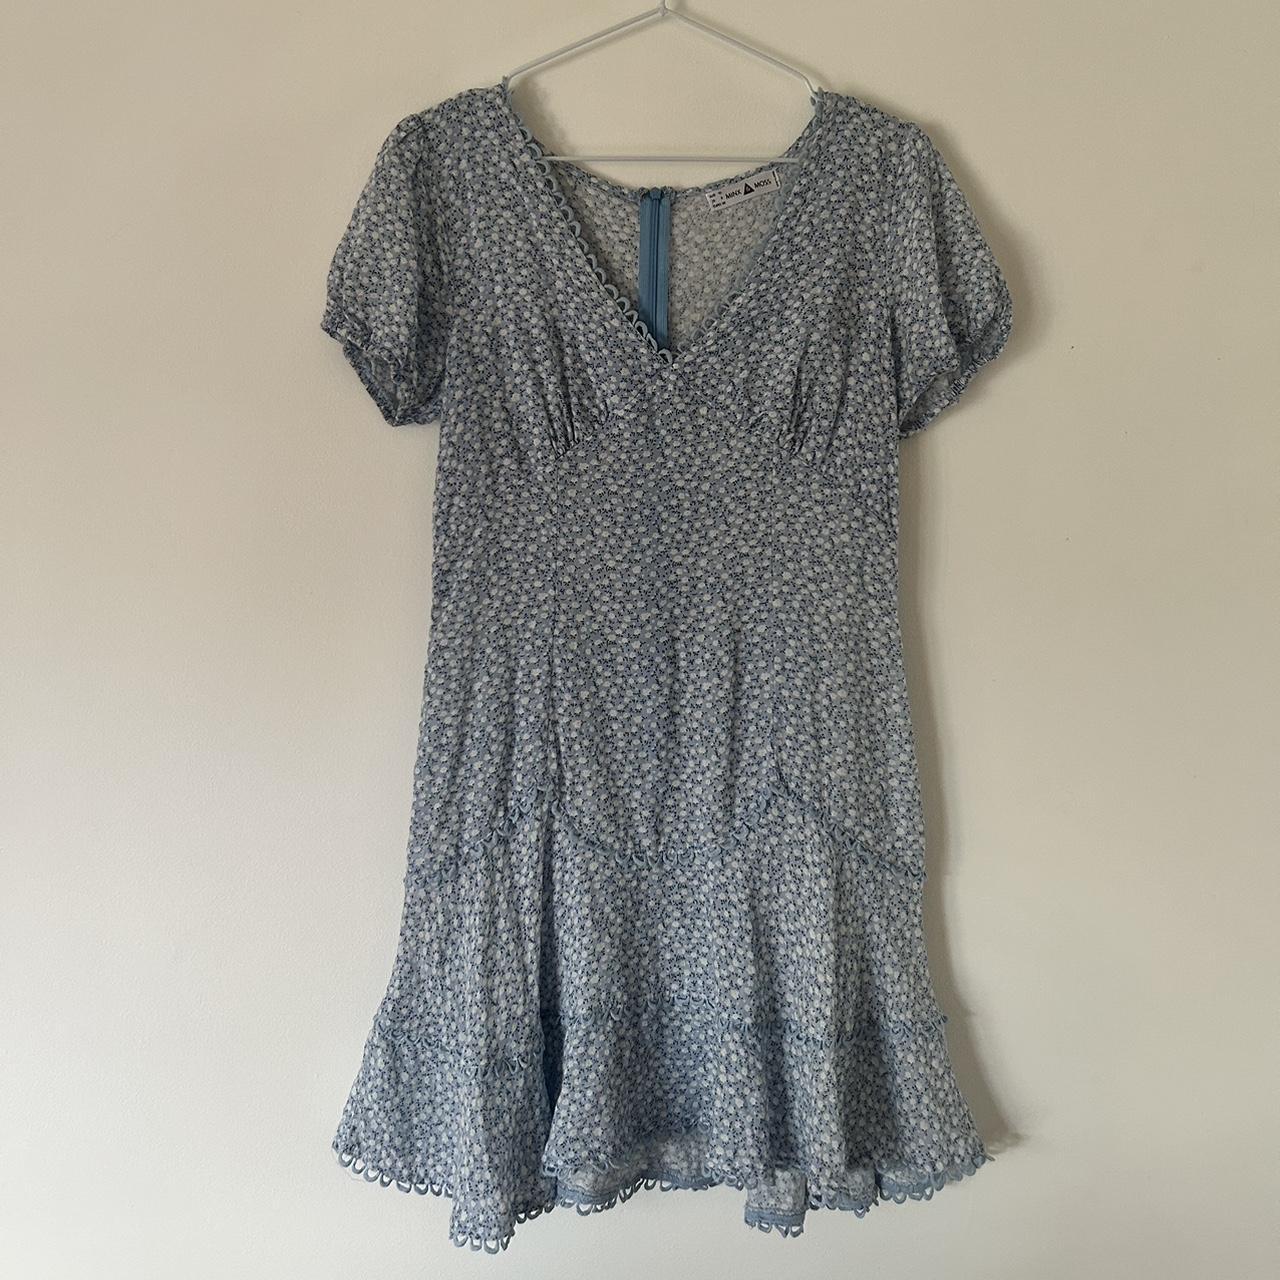 Blue Floral Minx & Moss dress, perfect for summer - Depop